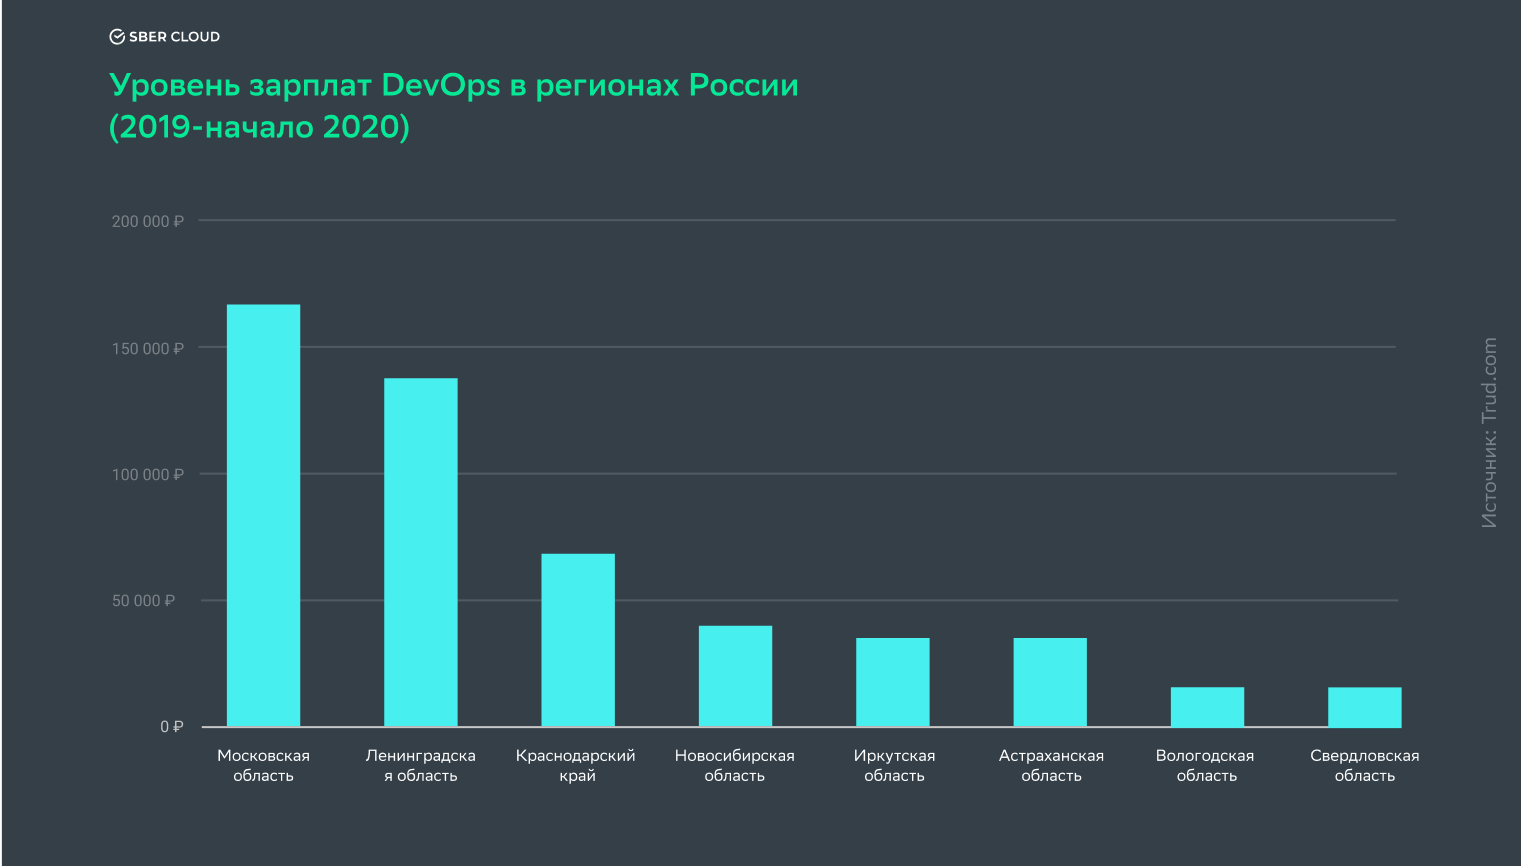 Уровень средней зарплаты DevOps-инженера в регионах России за 2019/начало 2020 года по данным портала по трудоустройству trud.com